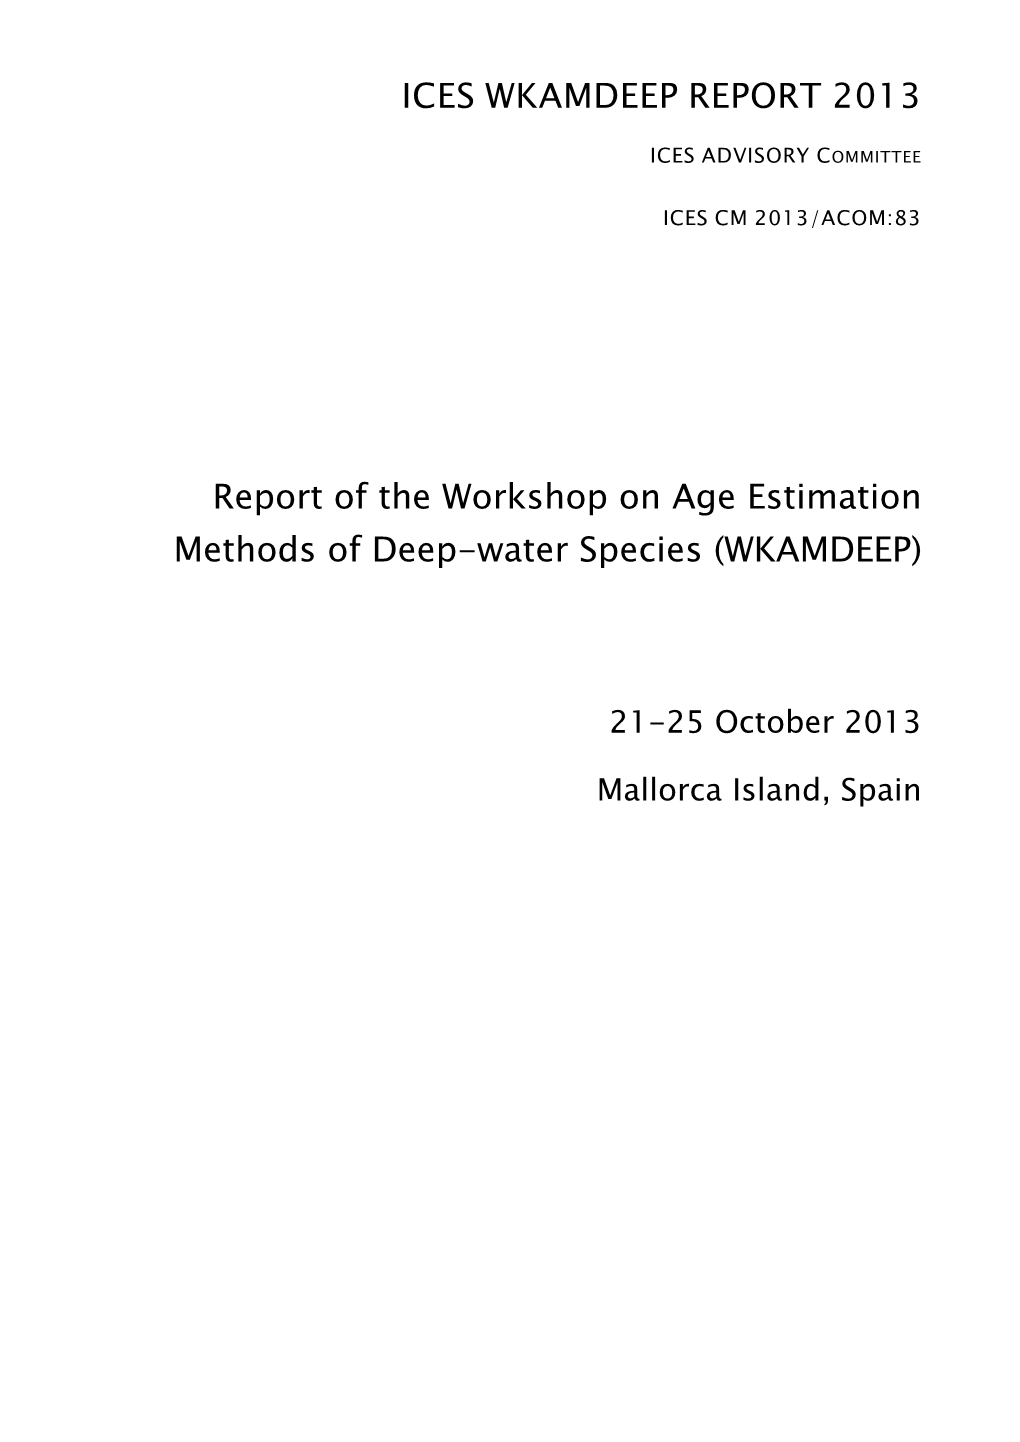 Report of the Workshop on Age Estimation Methods of Deep-Water Species (WKAMDEEP)